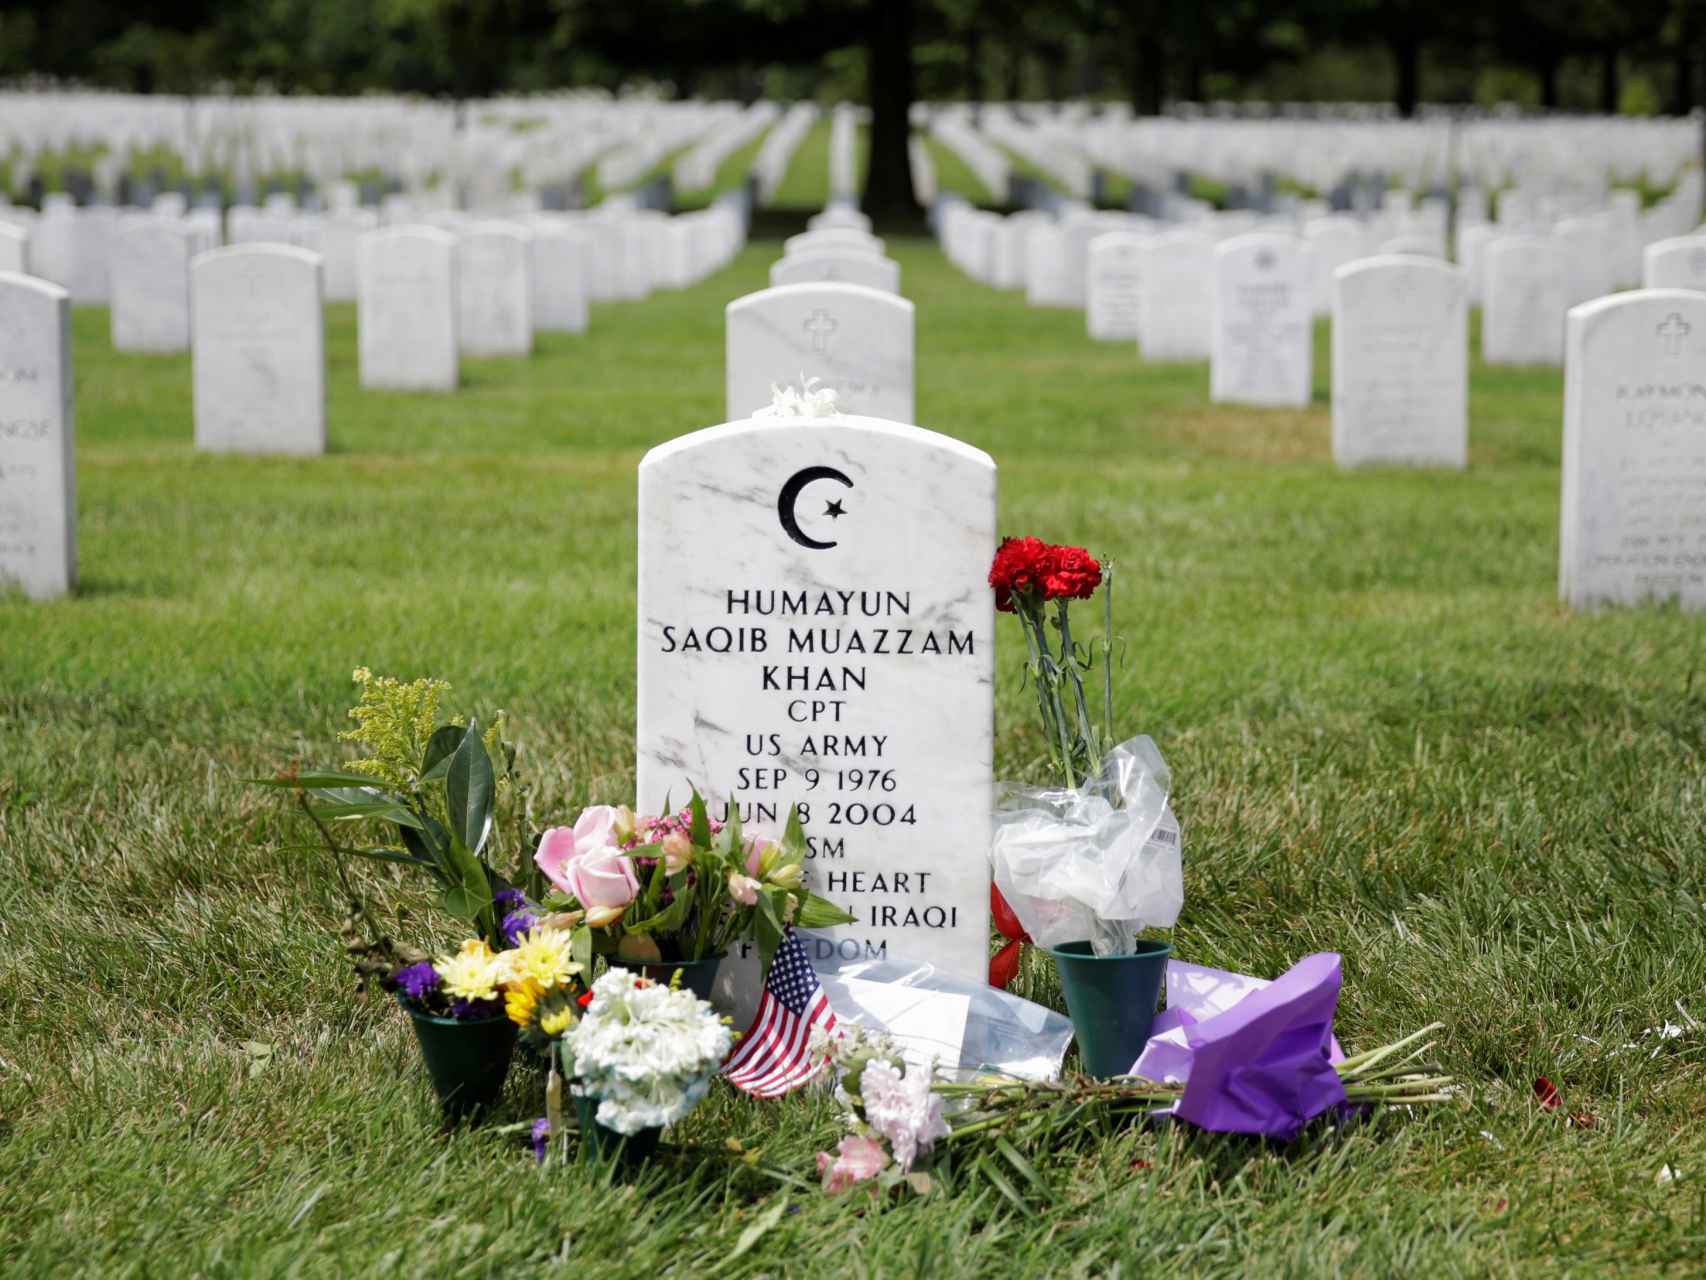 La tumba de Humayun Khan se encuentra en el cementerio nacional de Arlington en el estado de Virginia.